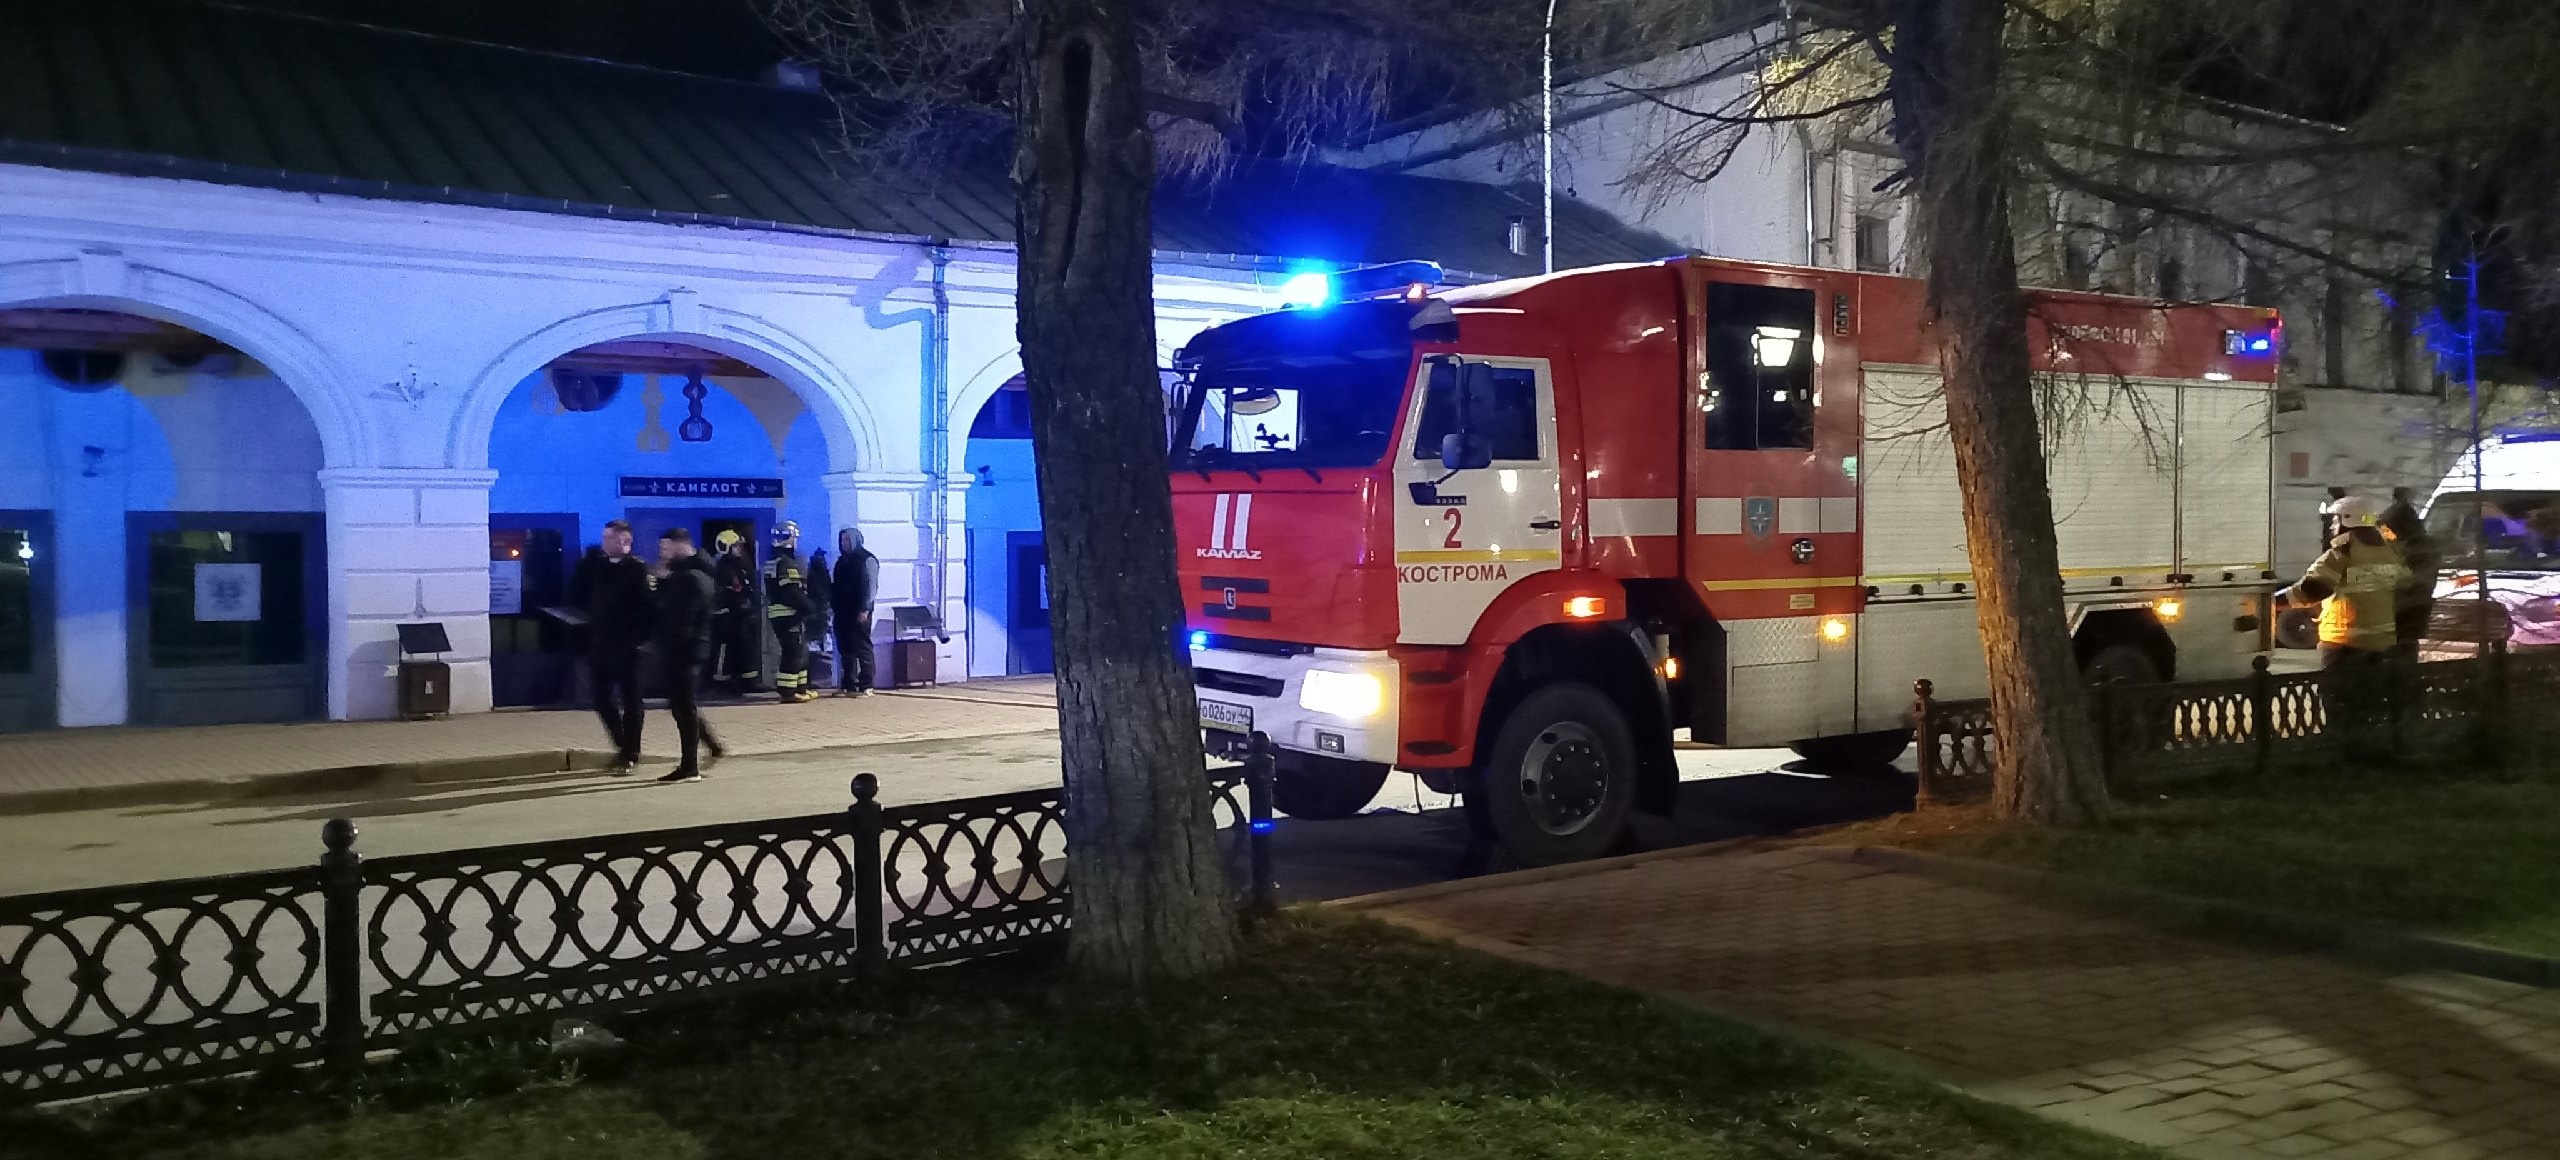 Пожар в костромском баре произошел из-за кухни